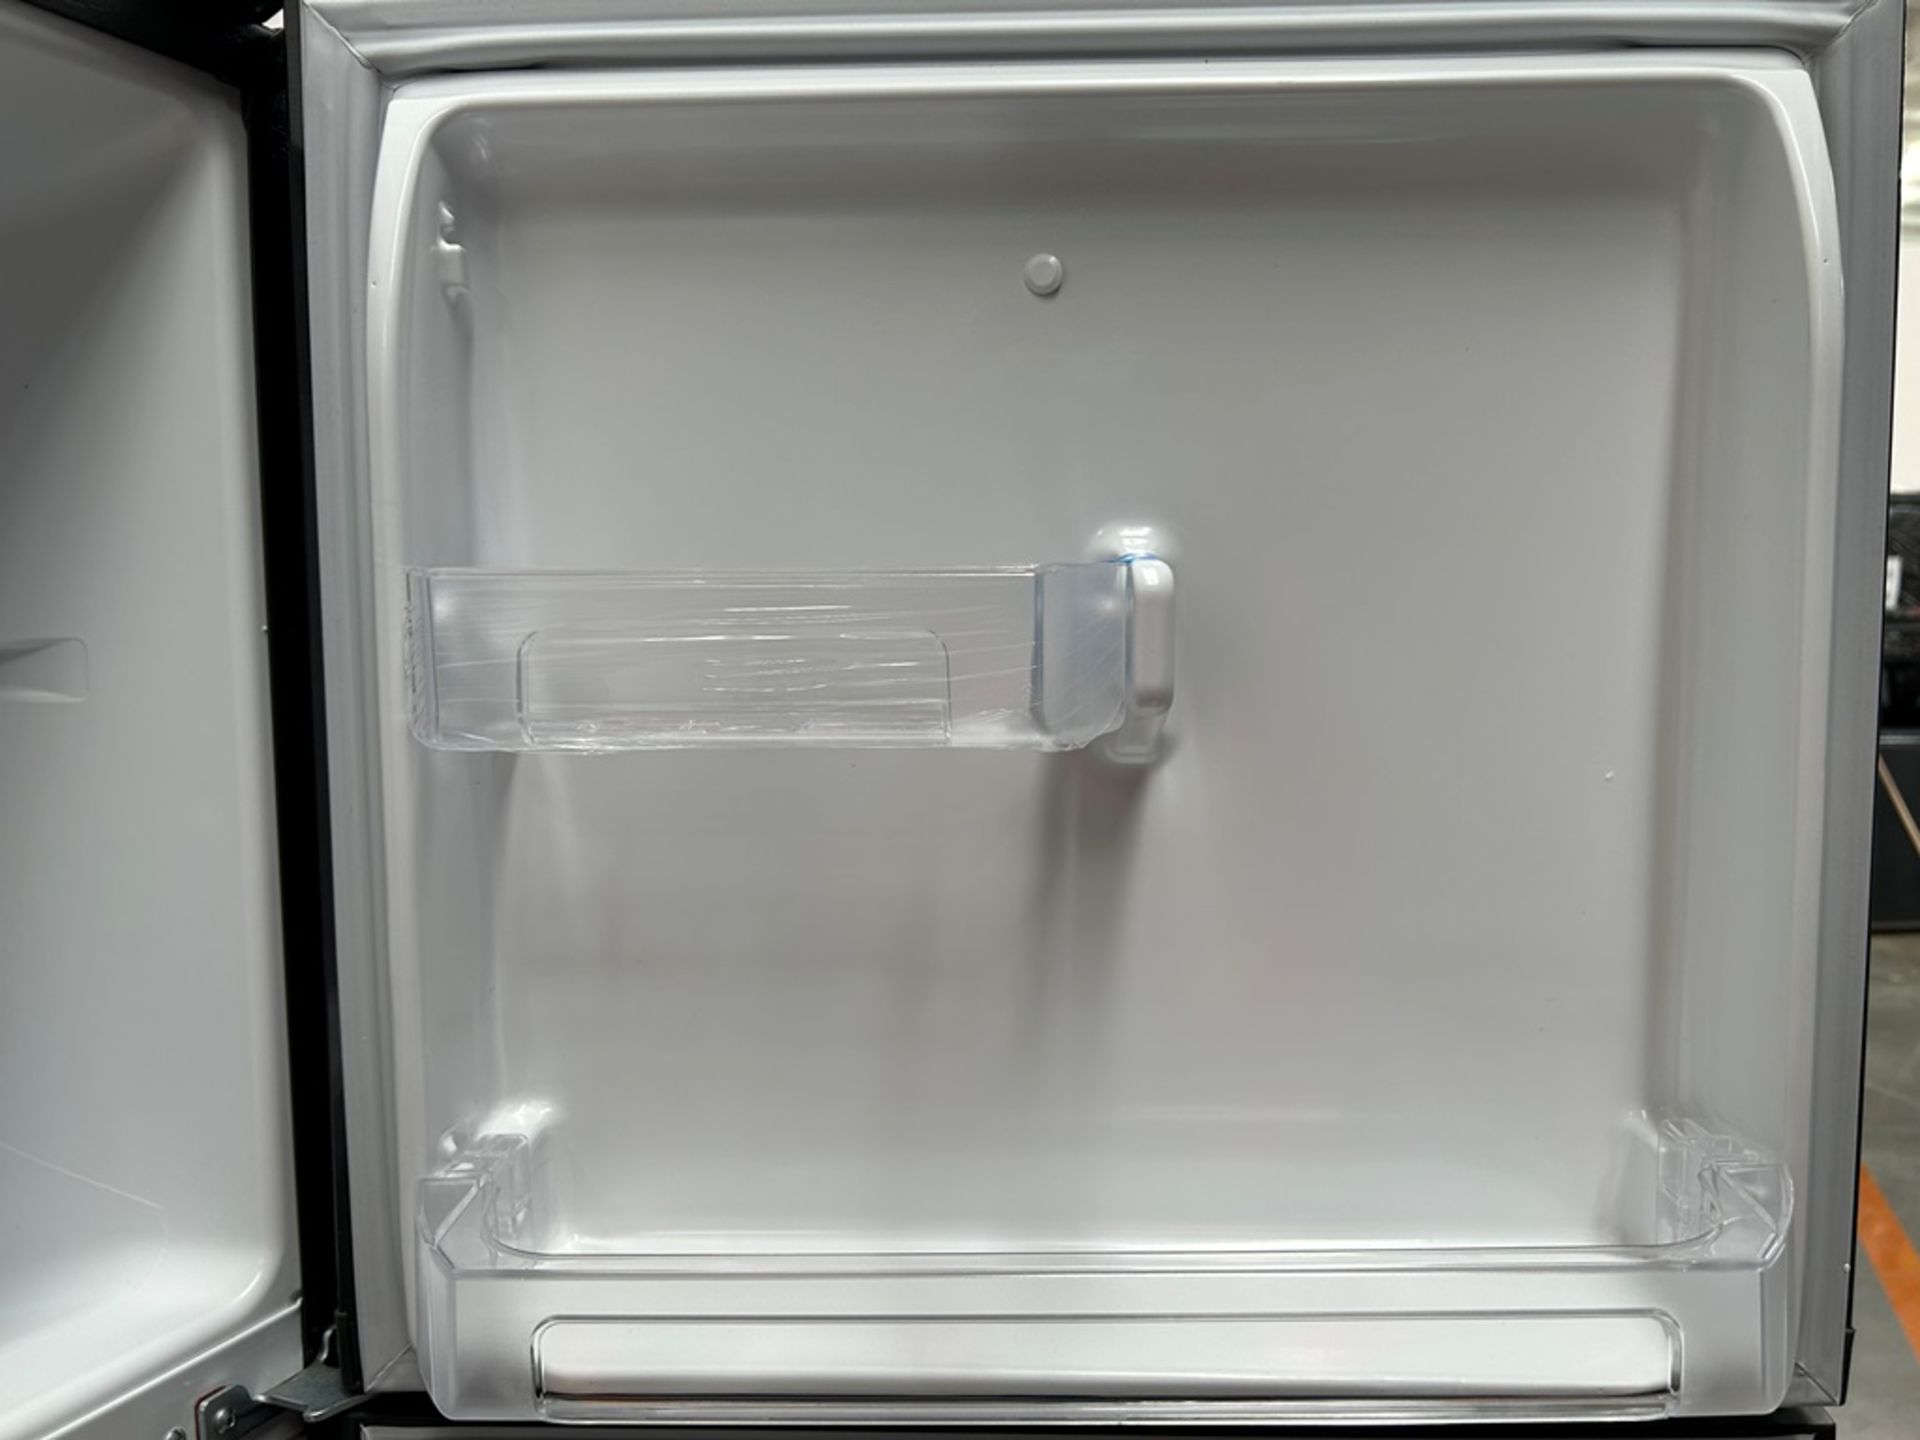 Lote de 2 refrigeradores contiene: 1 refrigerador Marca MABE, Modelo RMA250PVMRP0, Serie 13859, Col - Image 6 of 18